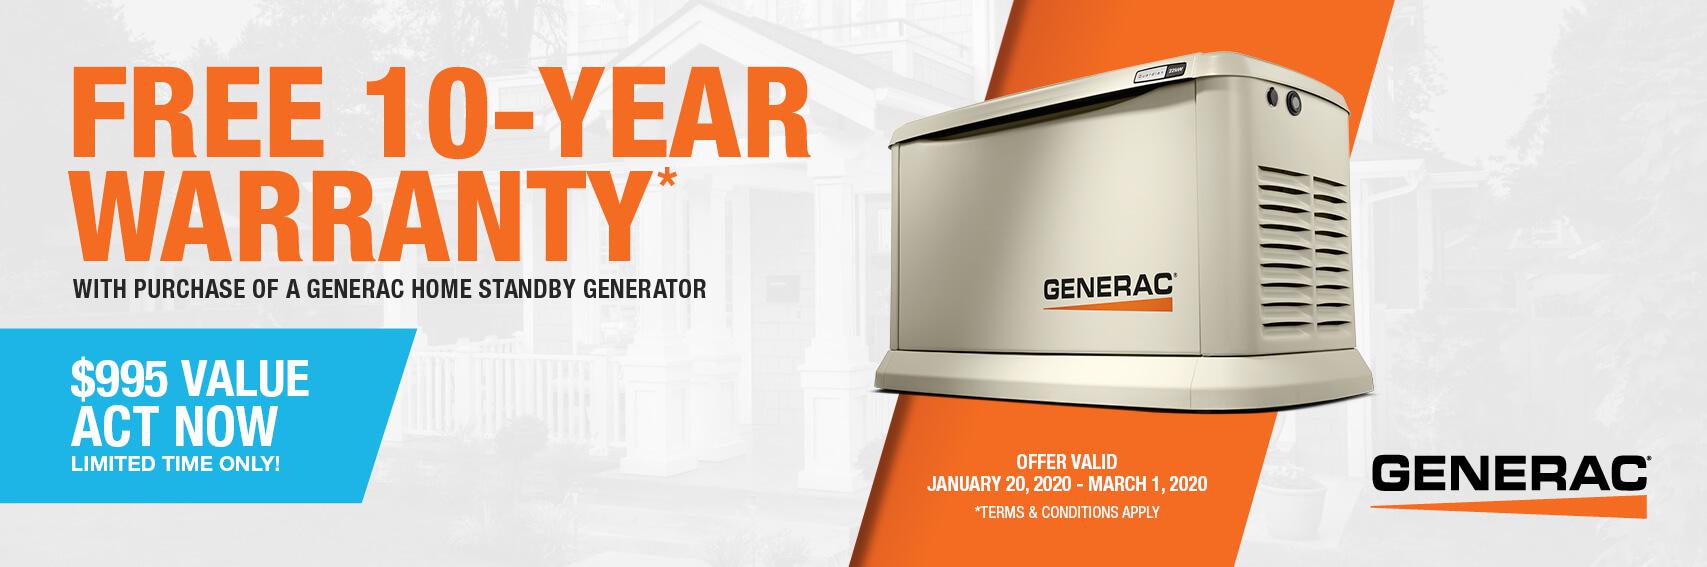 Homestandby Generator Deal | Warranty Offer | Generac Dealer | Santa Clara, CA